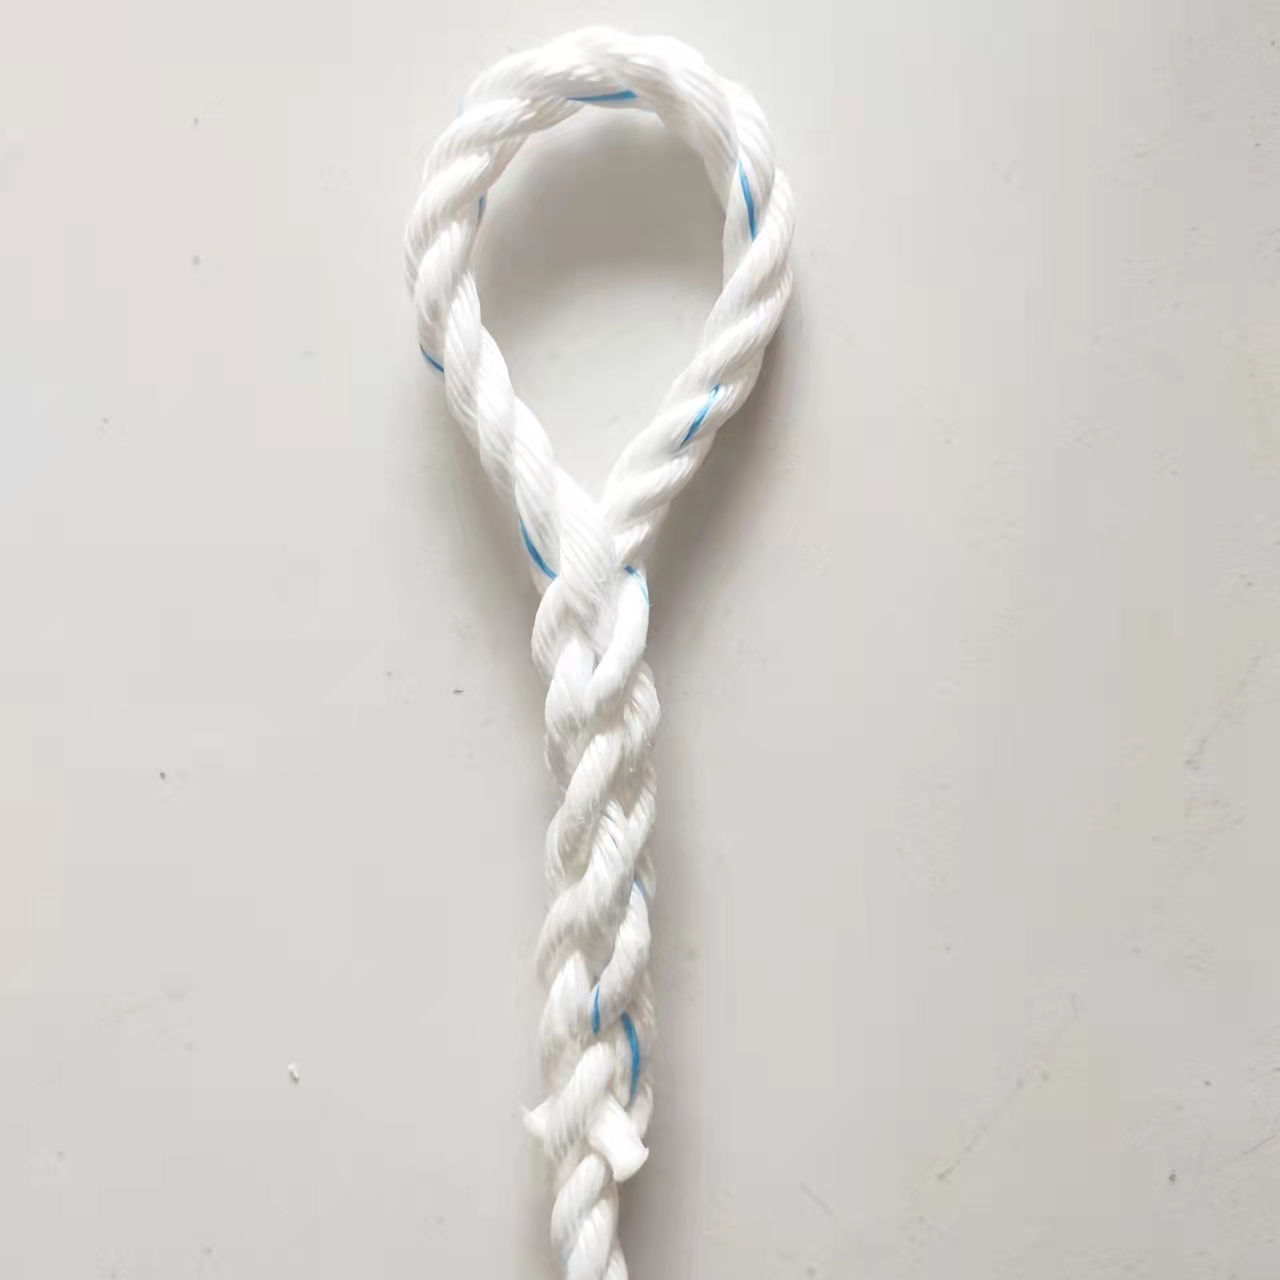 货车刹车绳耐磨亚麻绳塑料绳尼龙绳捆绑绳清粪机绳船用缆绳抗老化 - 图1